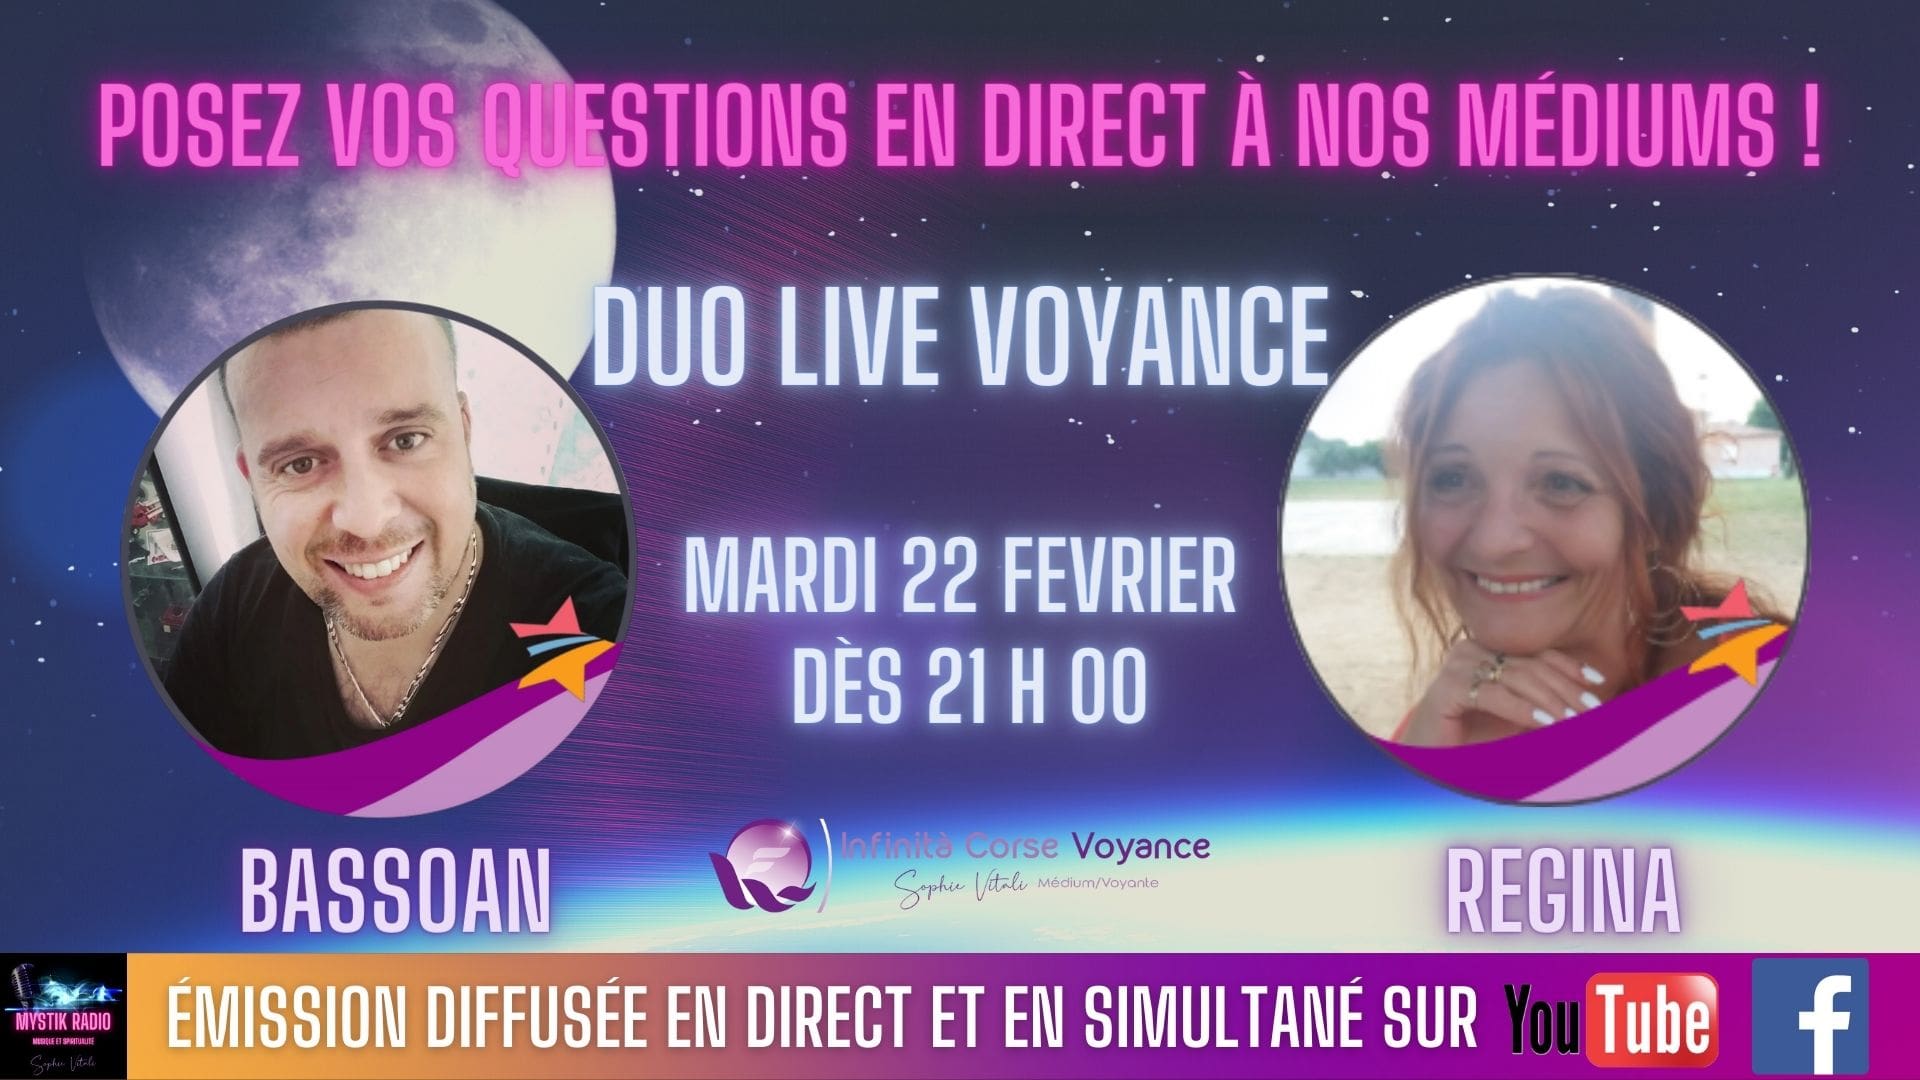 Duo live voyance gratuite par téléphone avec Régina et Bassoan